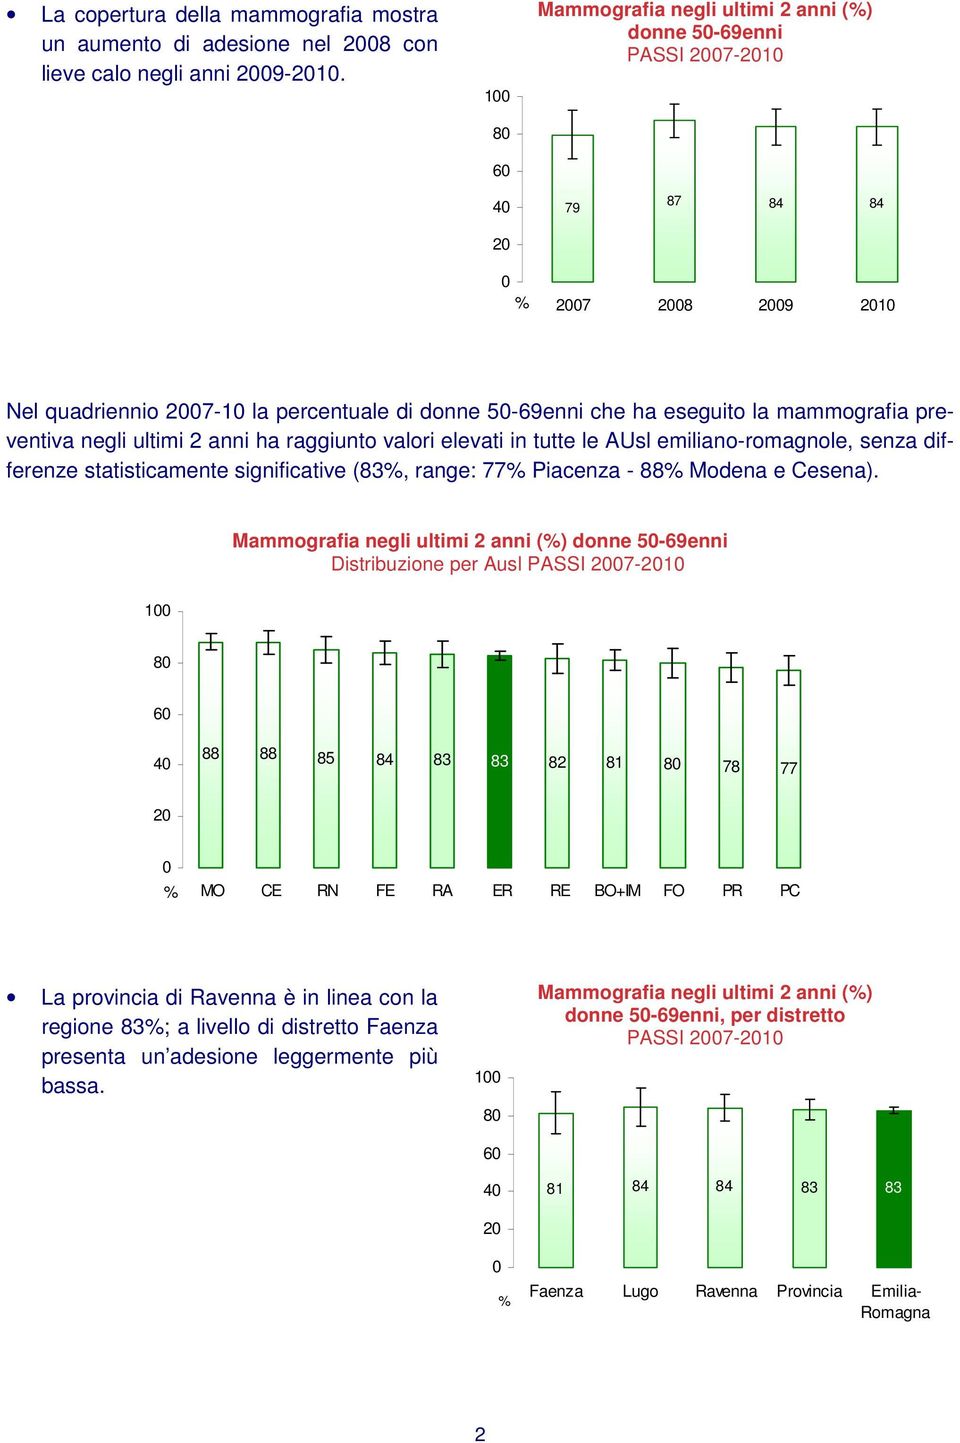 valori elevati in tutte le AUsl emiliano-romagnole, senza differenze statisticamente significative (83, range: 77 Piacenza - 88 Modena e Cesena).